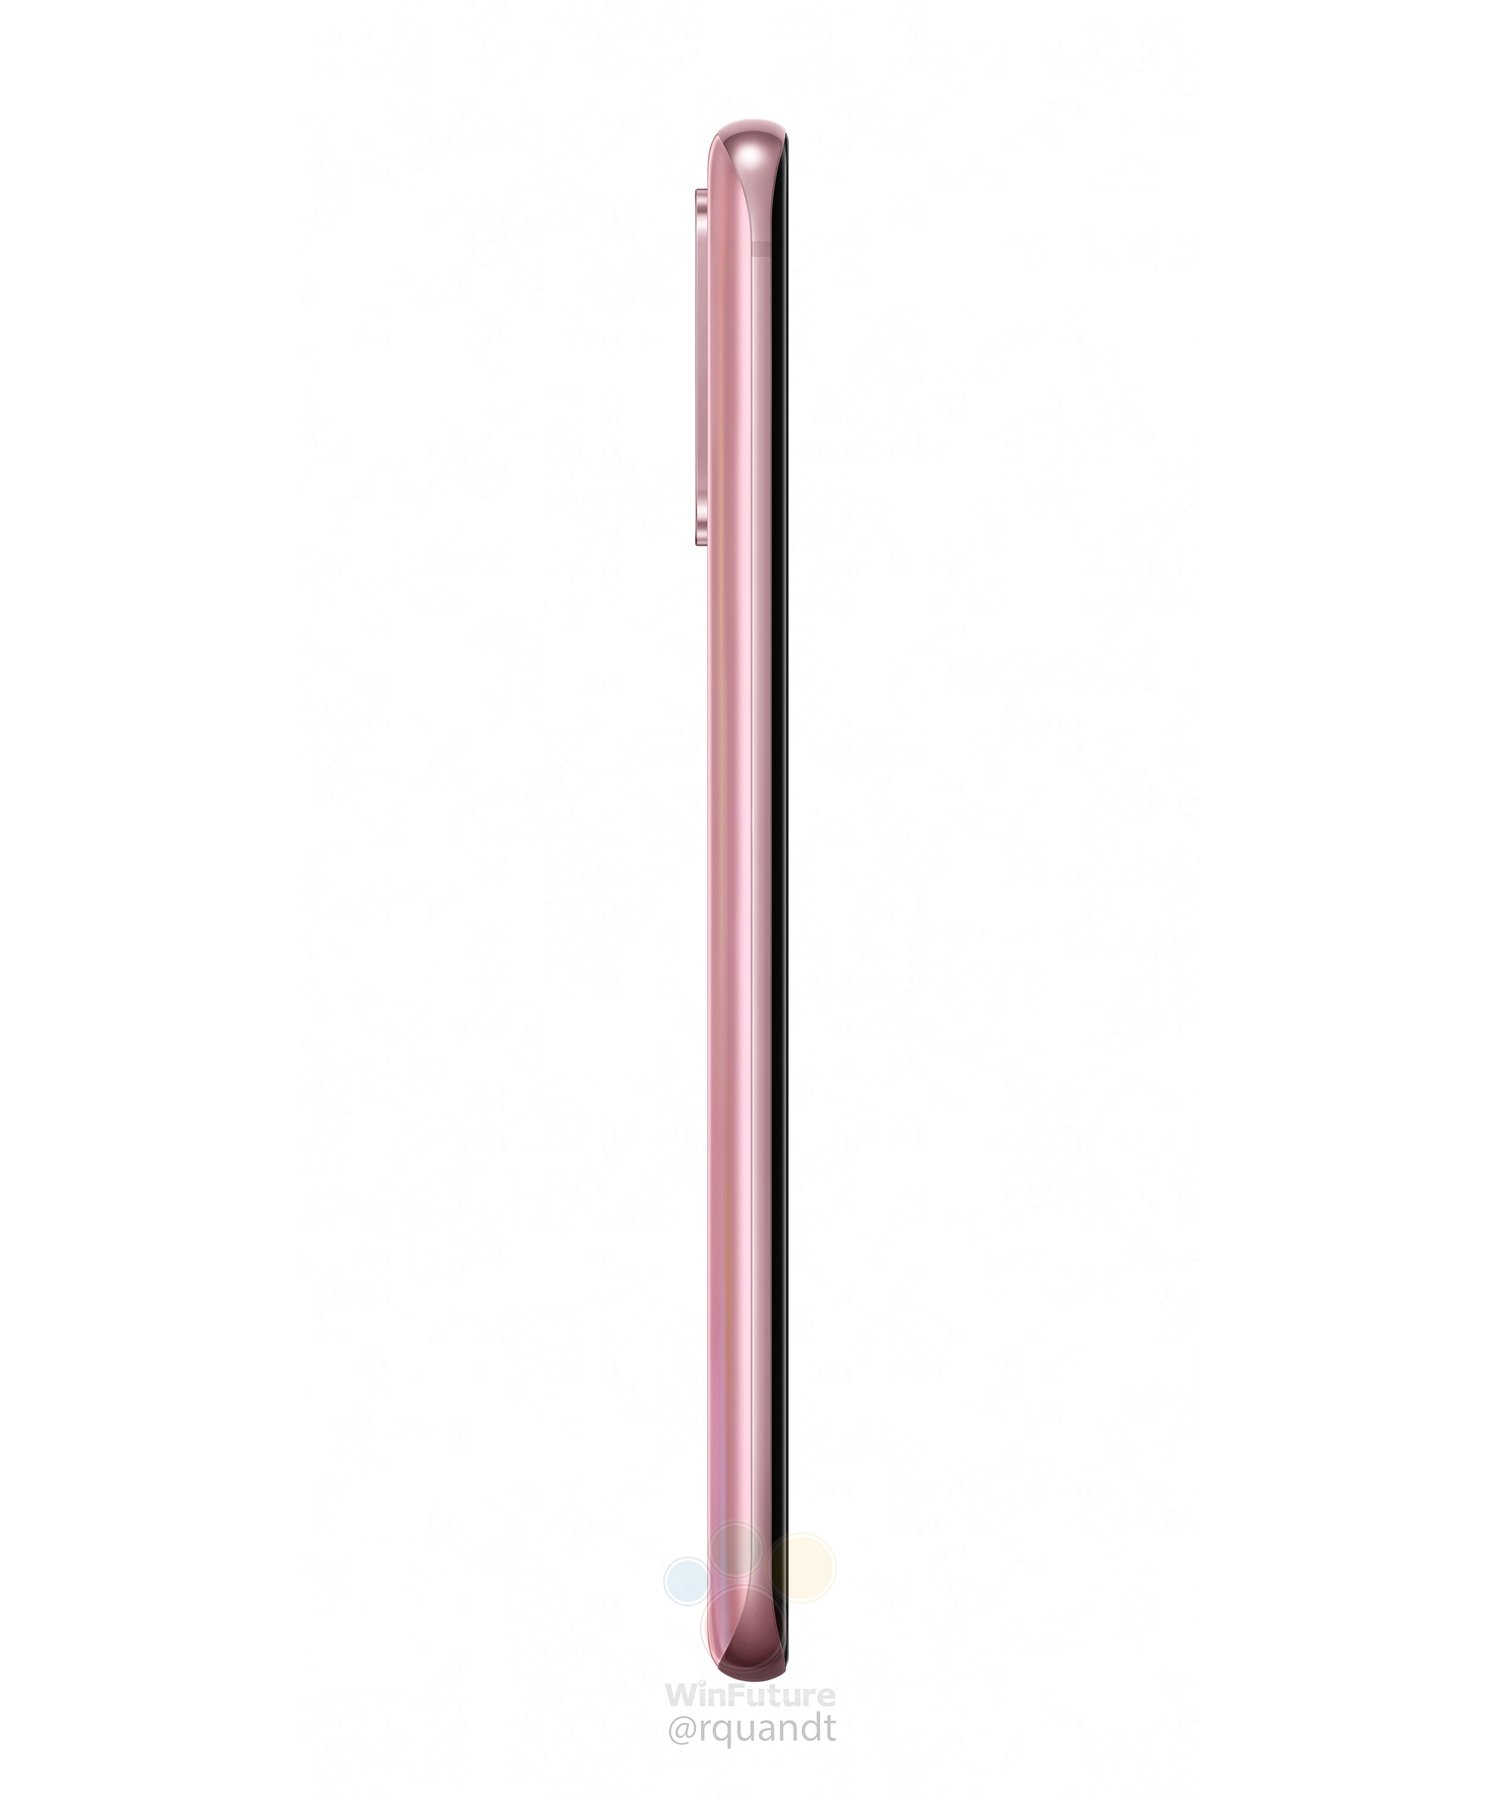 różowy Galaxy S20 Samsung cena kiedy premiera plotki przecieki wycieki rendery specyfikacja dane techniczne